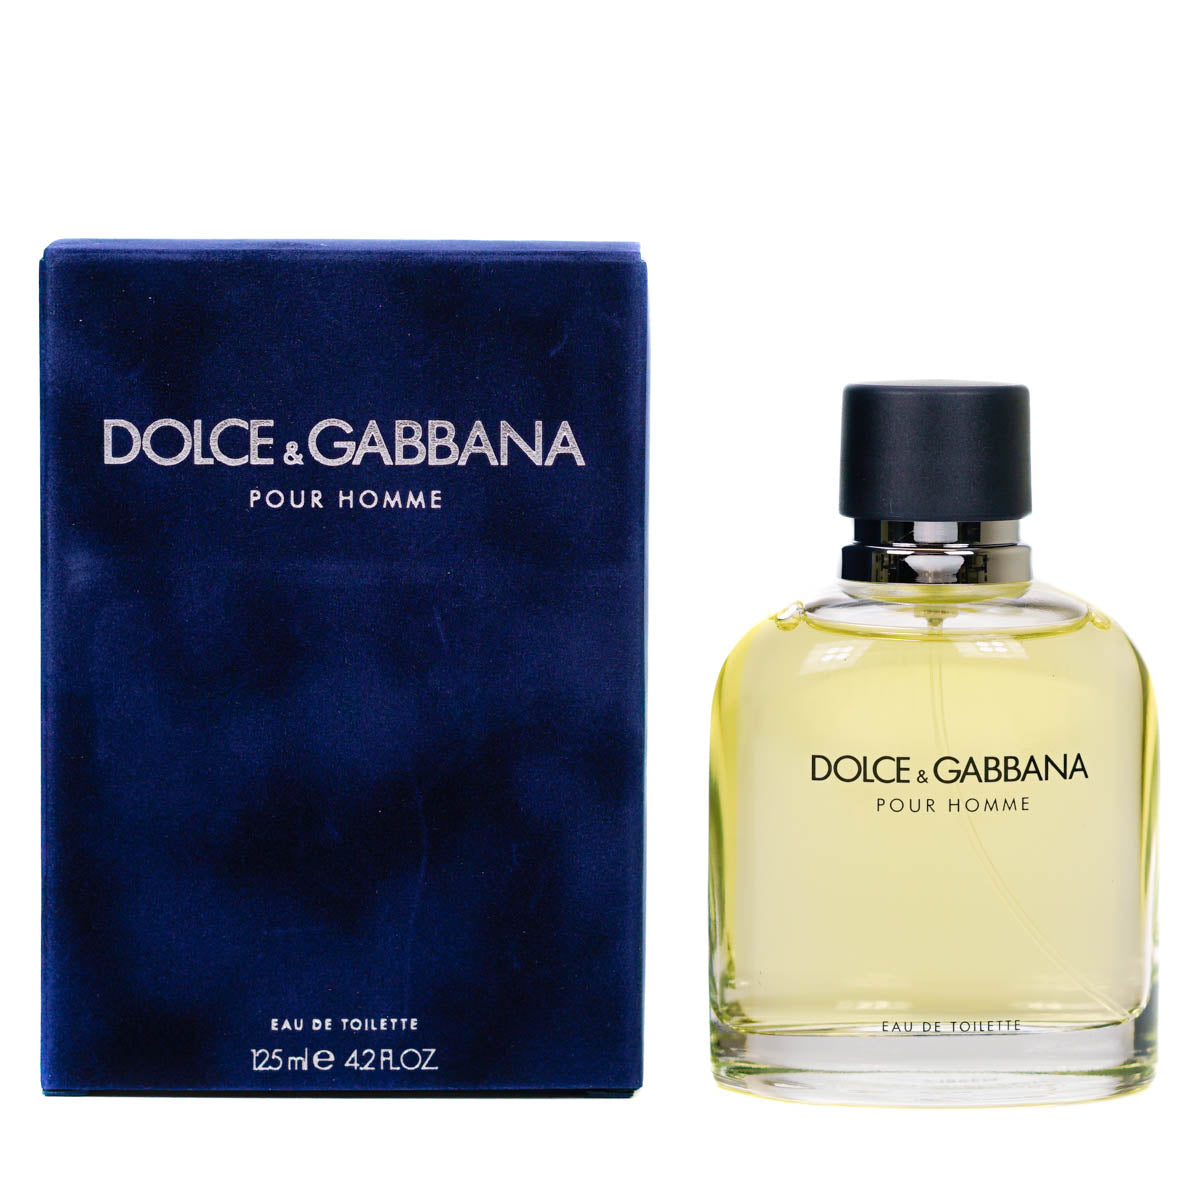 Dolce & Gabbana Pour Homme 125ml Eau De Toilette